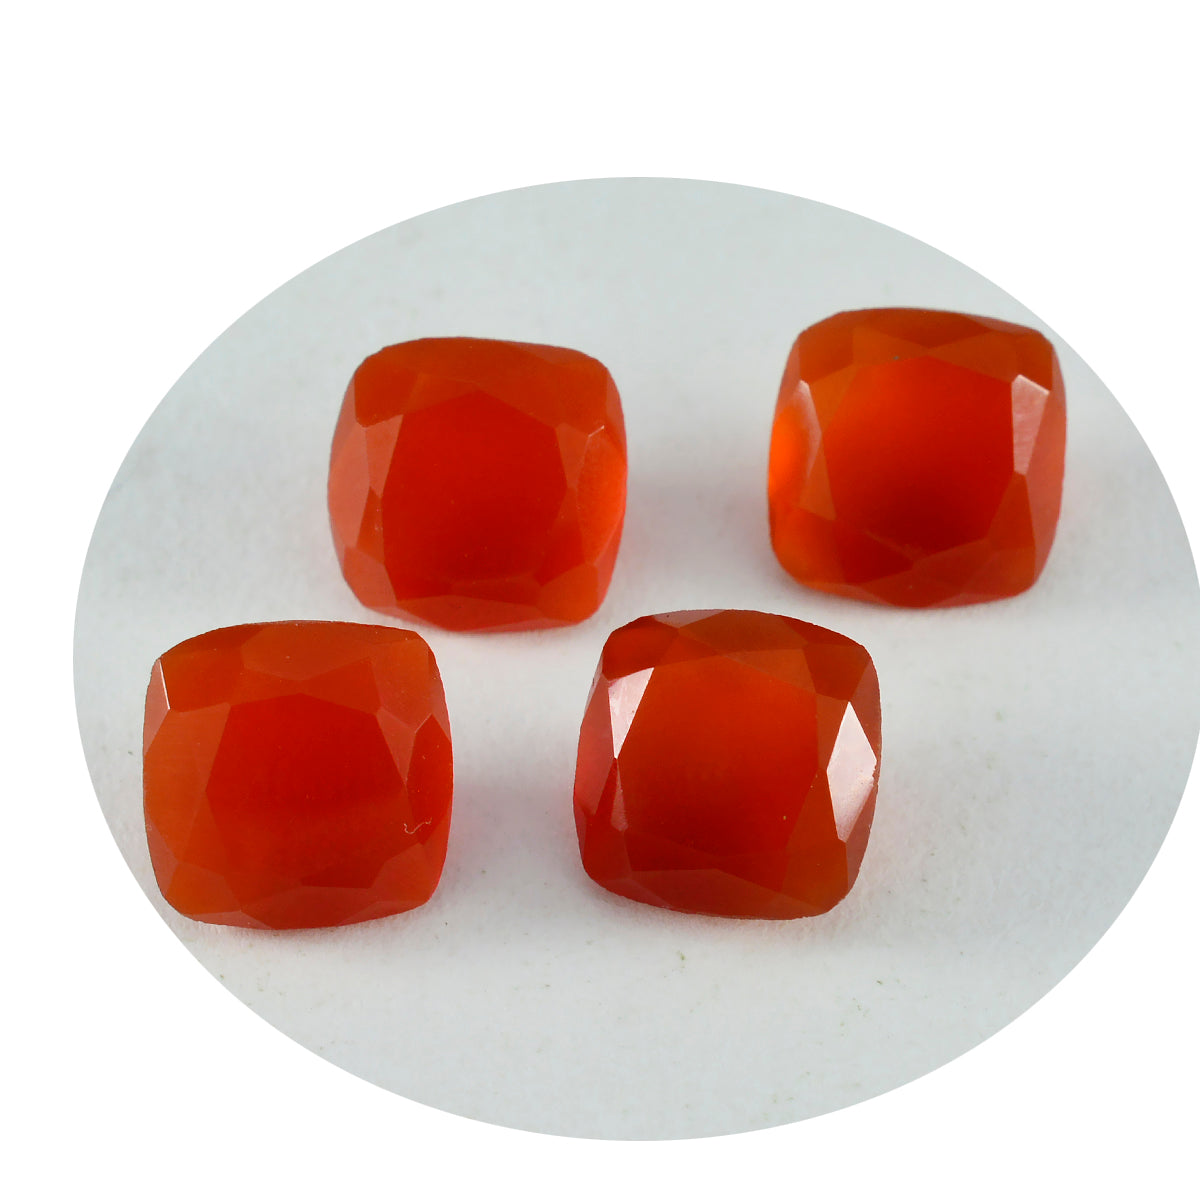 riyogems 1pc véritable onyx rouge à facettes 6x6mm forme de coussin belle qualité pierre précieuse en vrac